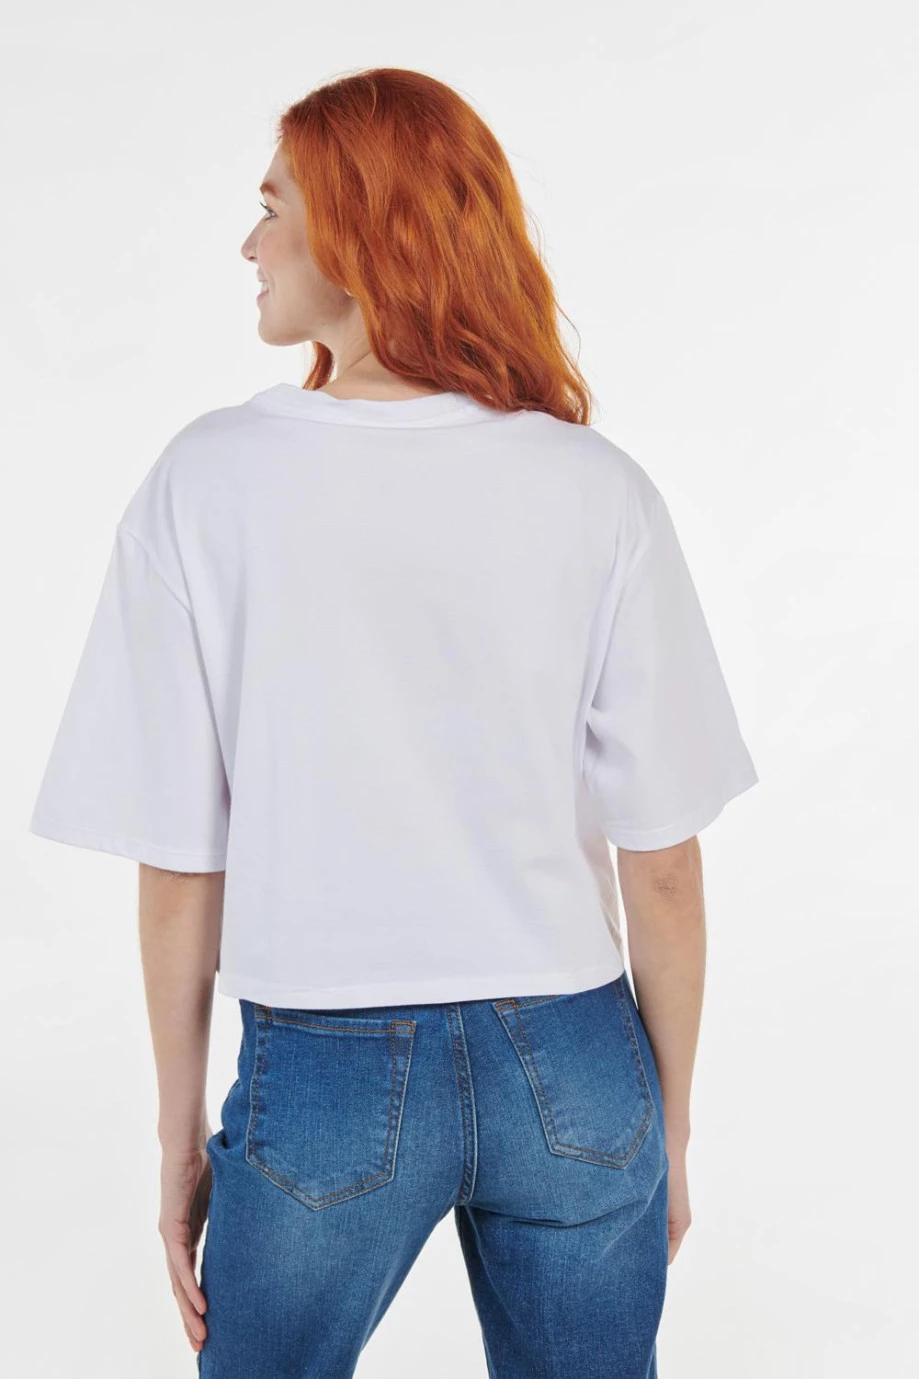 Camiseta blanca crop top oversize con diseño de Garfield y cuello redondo